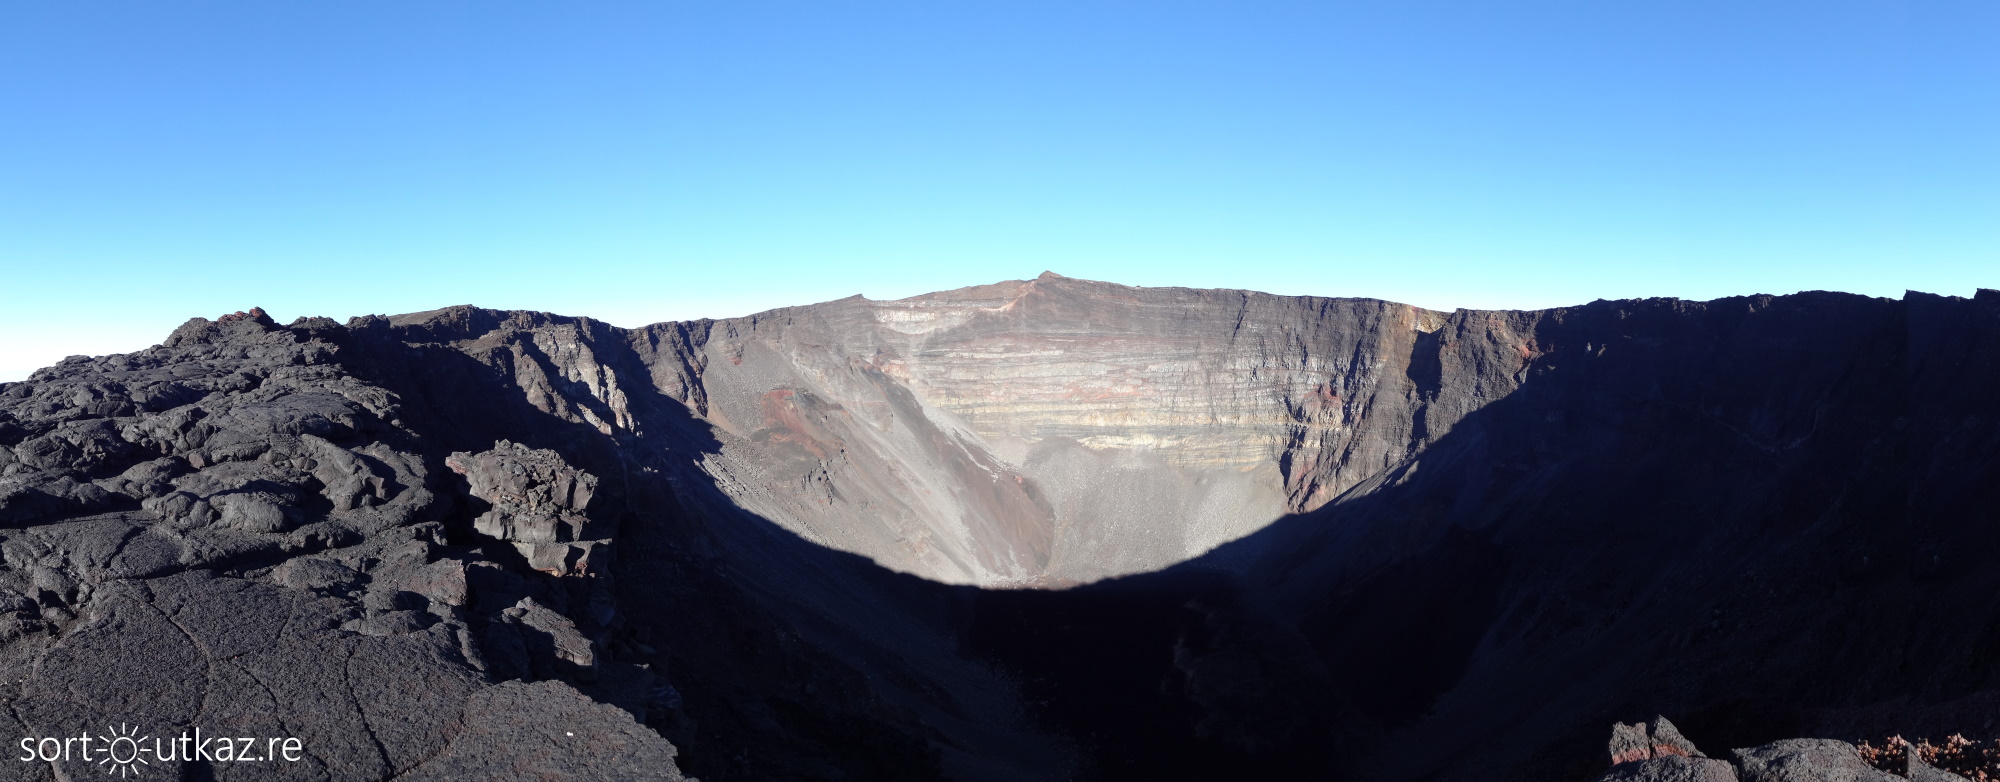 Cratère du volcan du Piton de la Fournaise